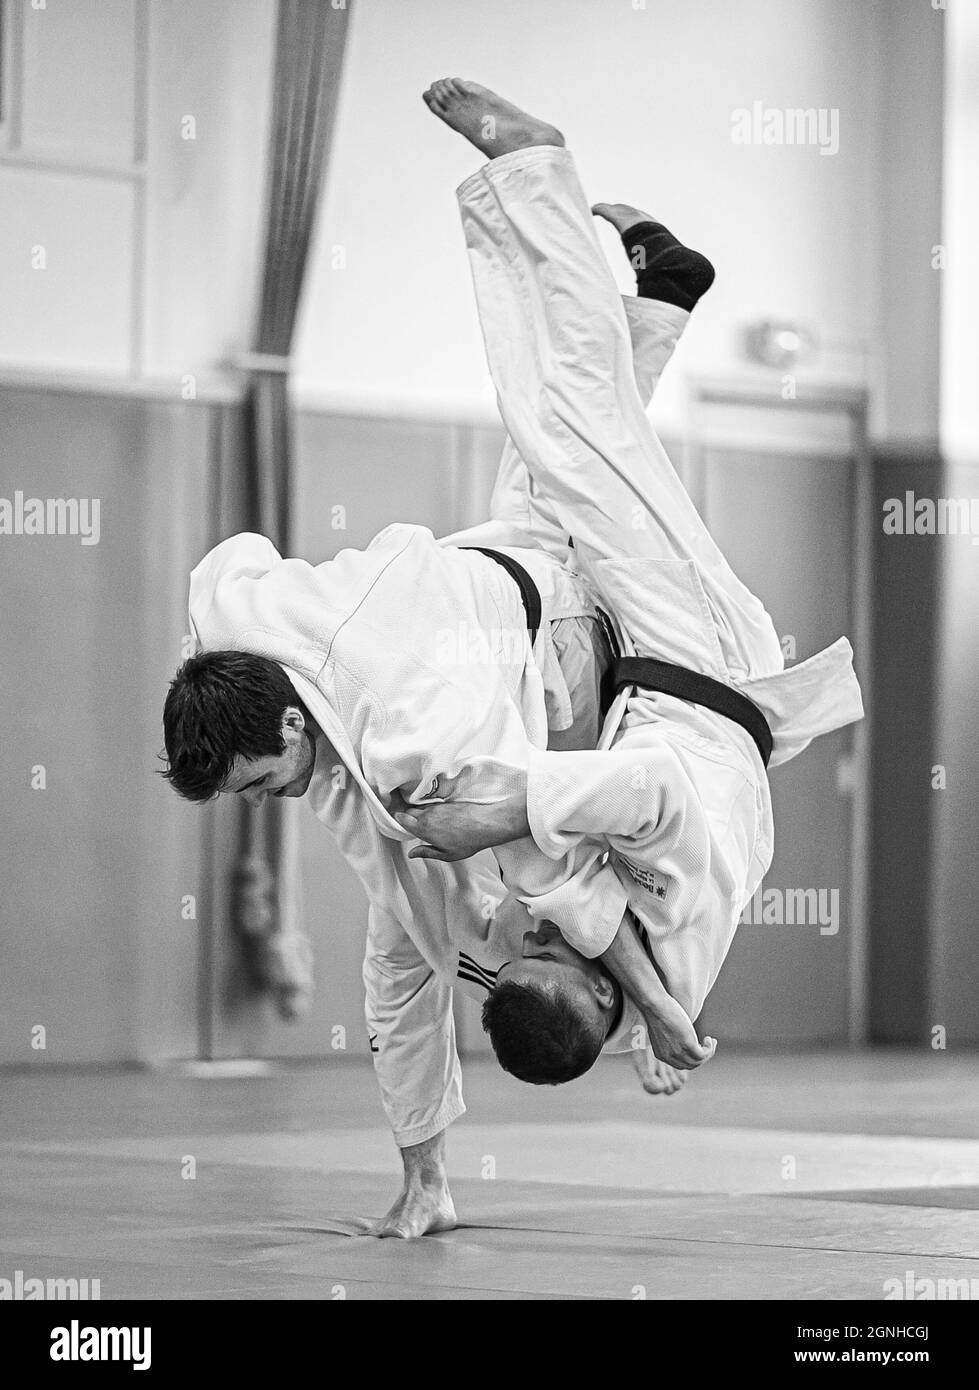 Ceinture noire judoka faisant Harai goshi judo technique (l'un des 40 premiers jets de Judo tel que développé par Kano Jigoro.)(illustration judo) Banque D'Images